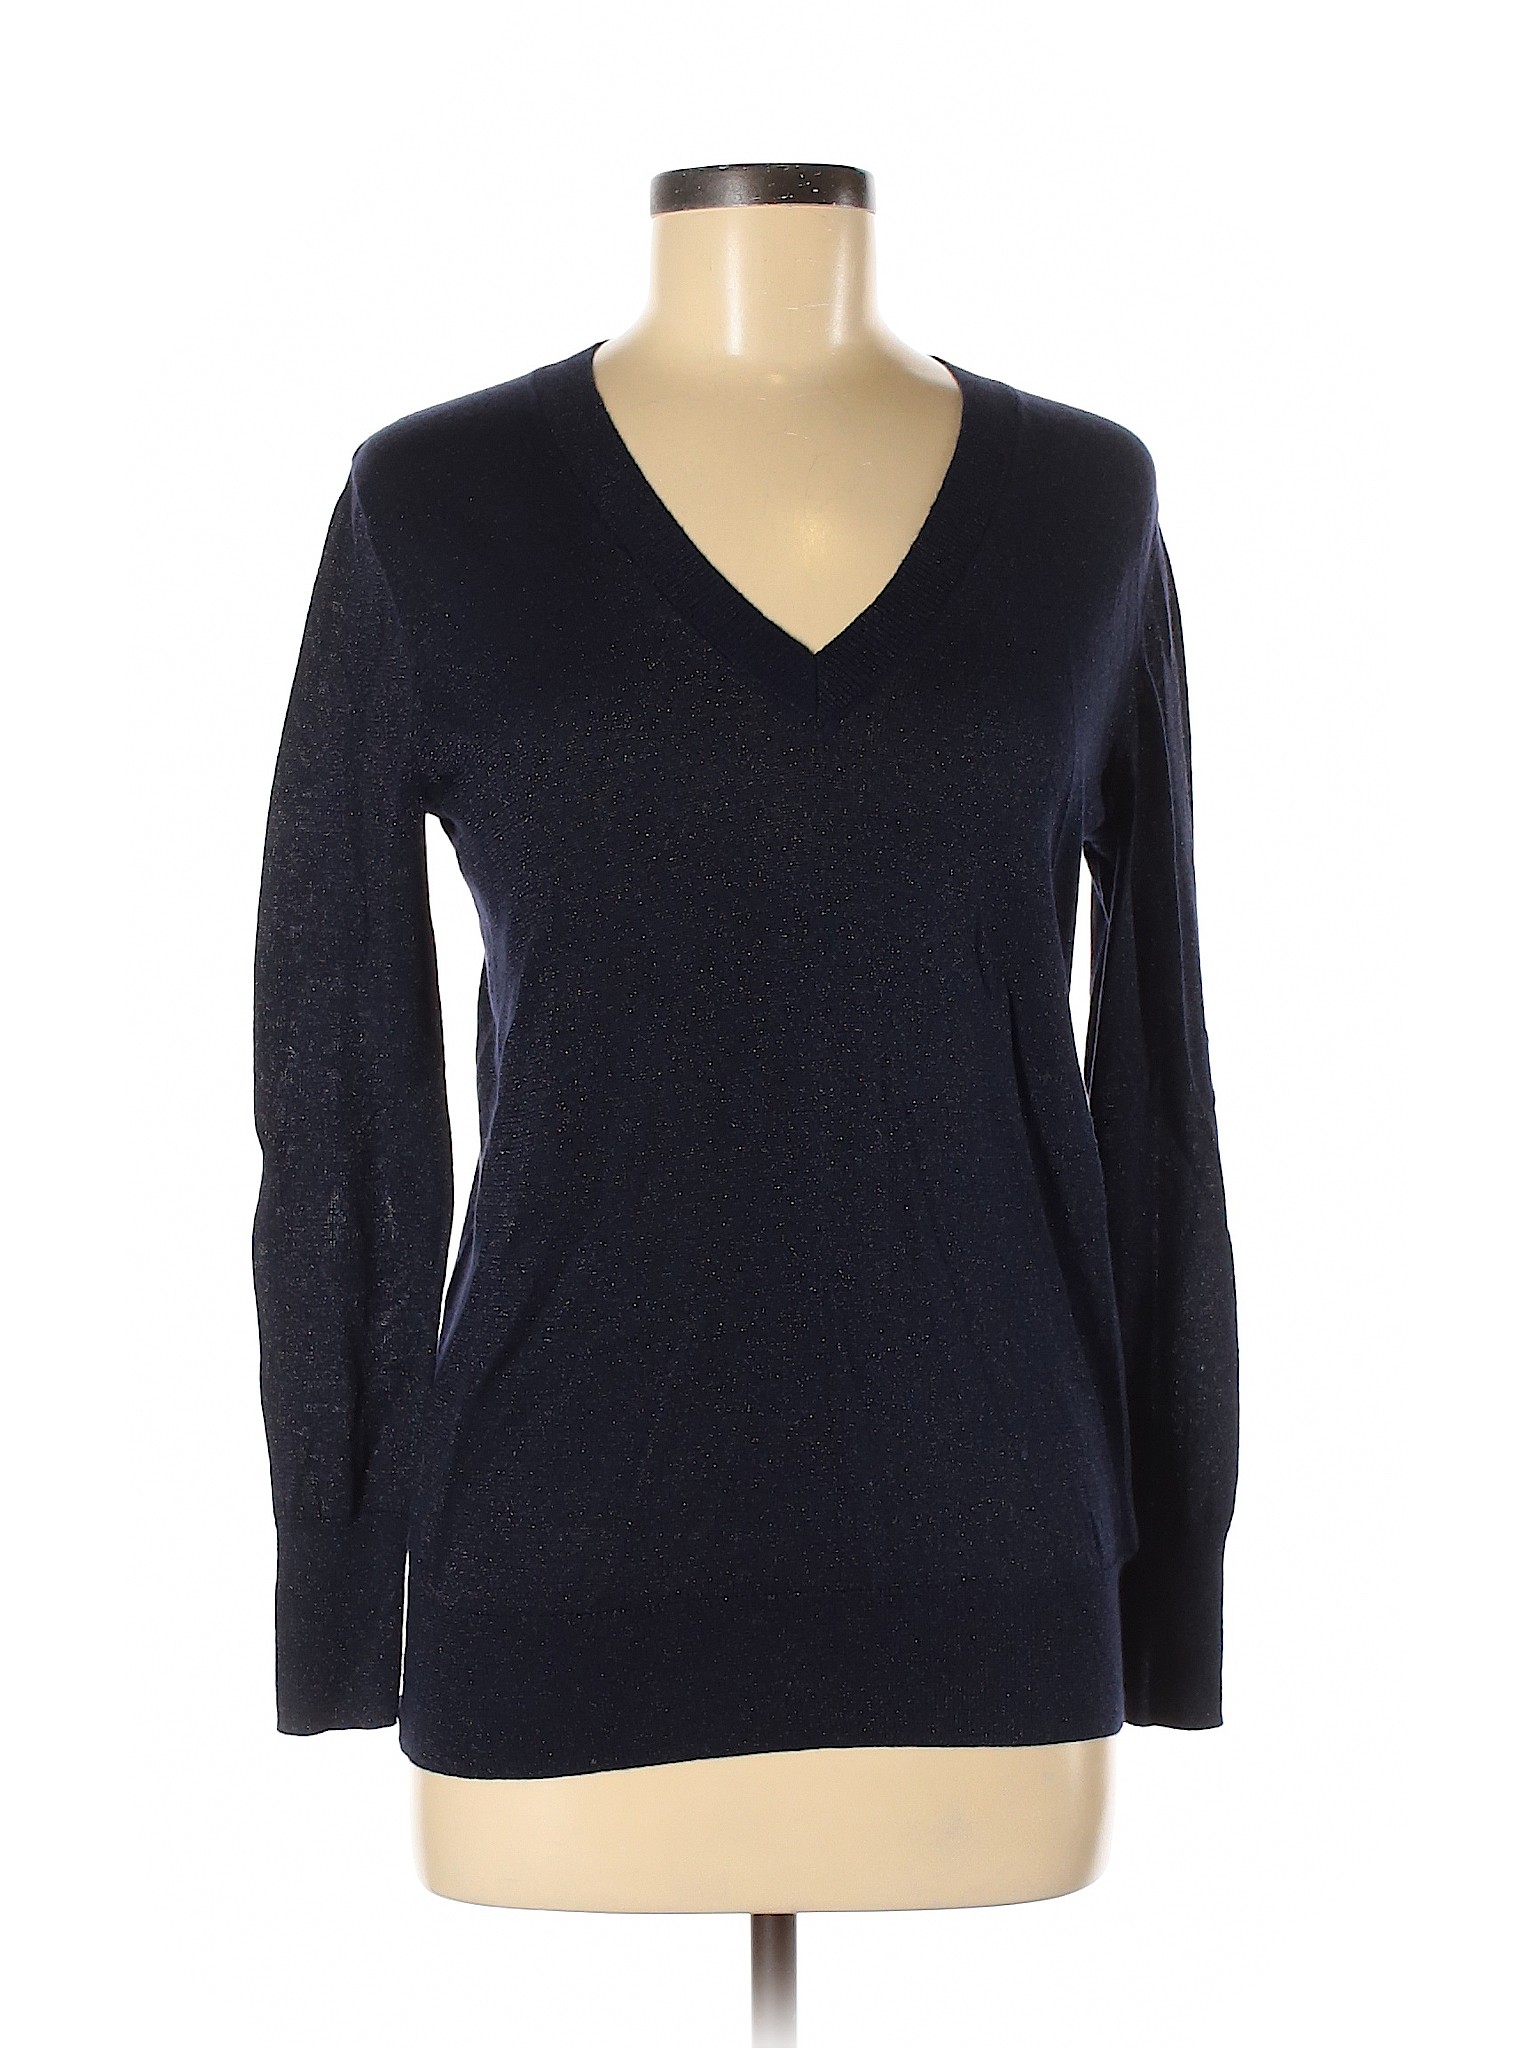 Gap Women Blue Pullover Sweater XS | eBay